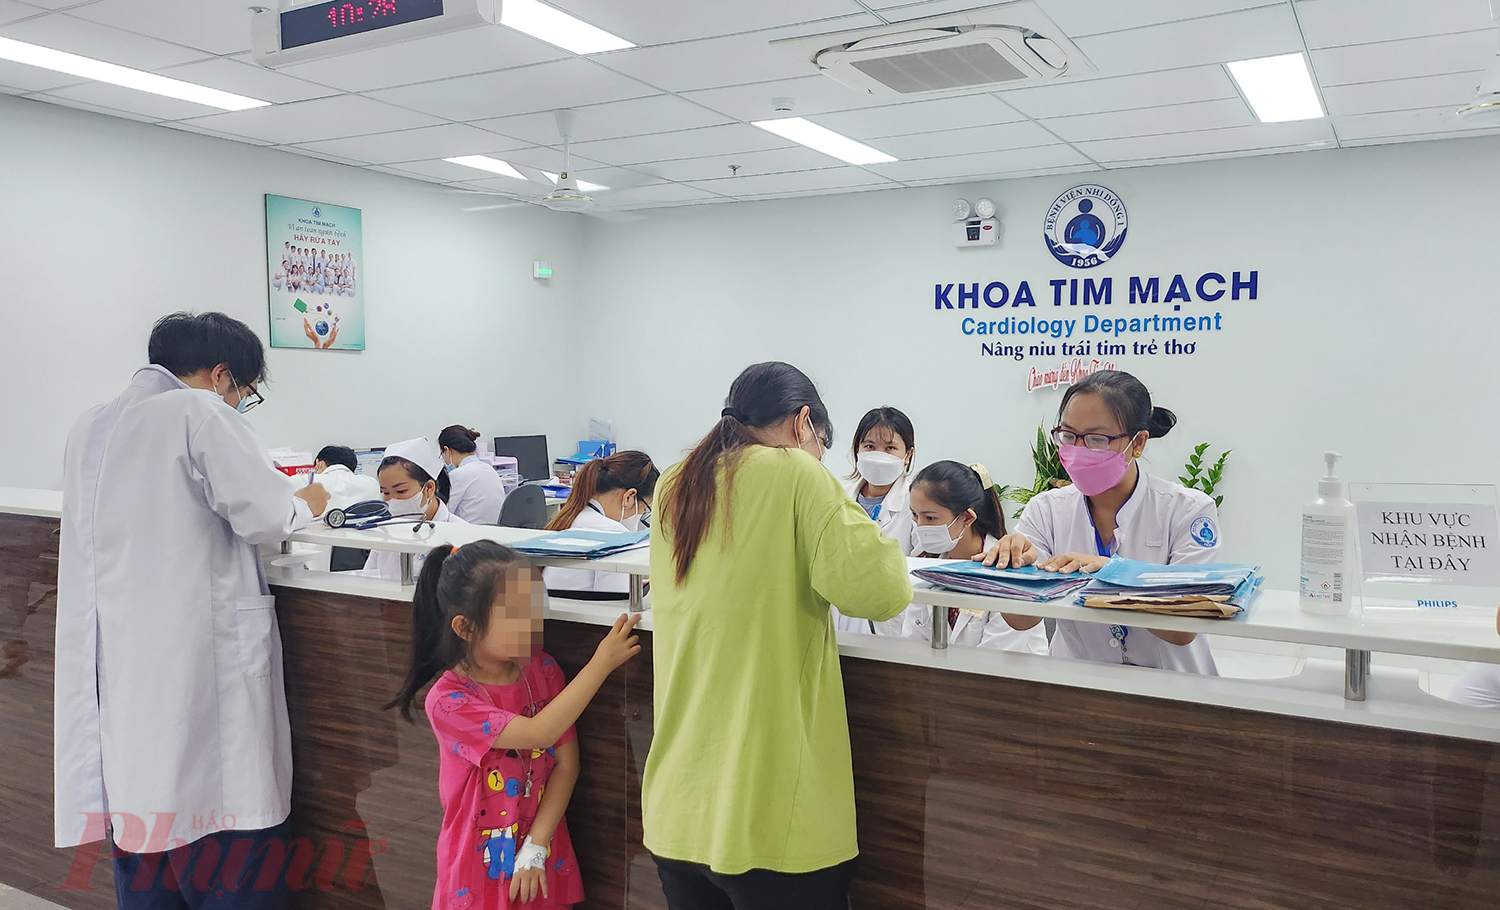 Như vậy, Trung tâm Tim mạch của Bệnh viện Nhi Đồng 1 đã trở thành Trung tâm Xuất sắc (Center of Excellence) đầu tiên của Children’s HeartLink  tại Việt Nam và thứ 7 trên phạm vi toàn cầu 